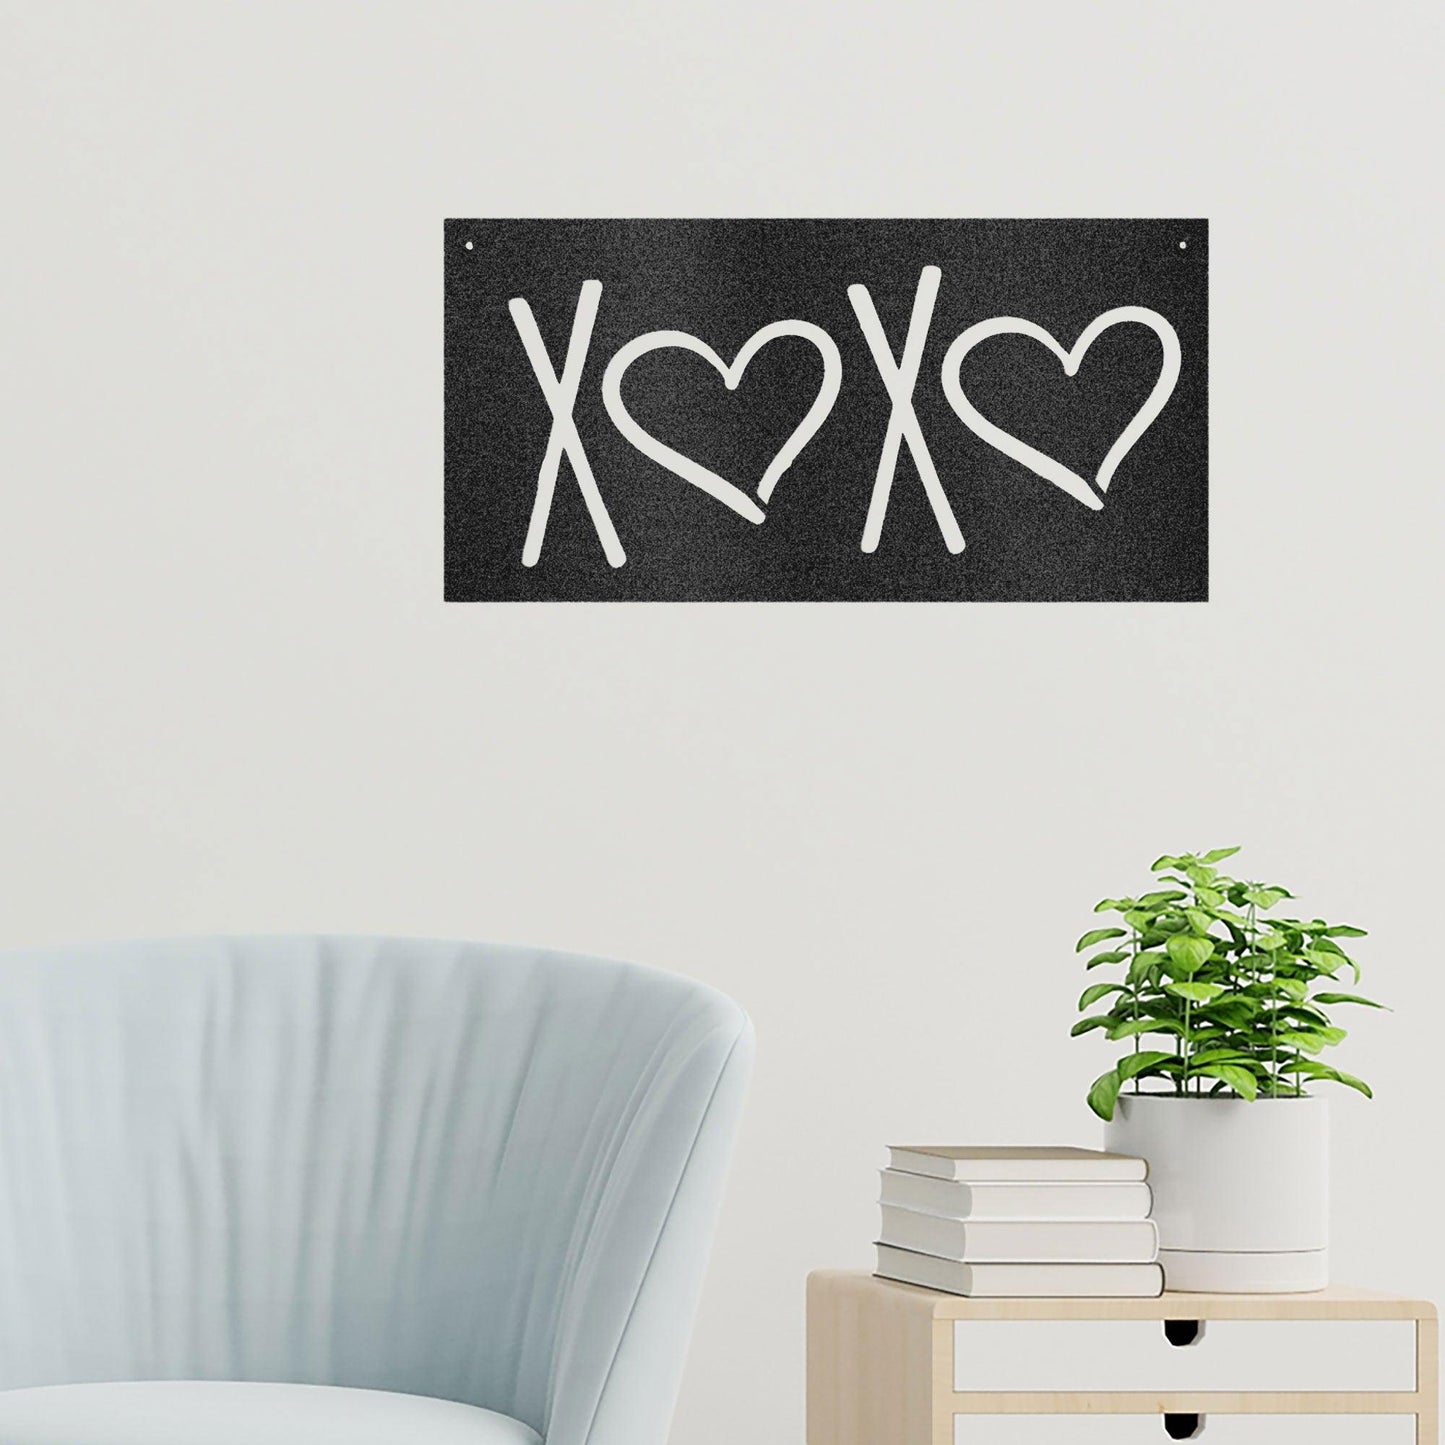 XOXO Hugs and Kisses Indoor Outdoor Steel Wall Sign - Mallard Moon Gift Shop